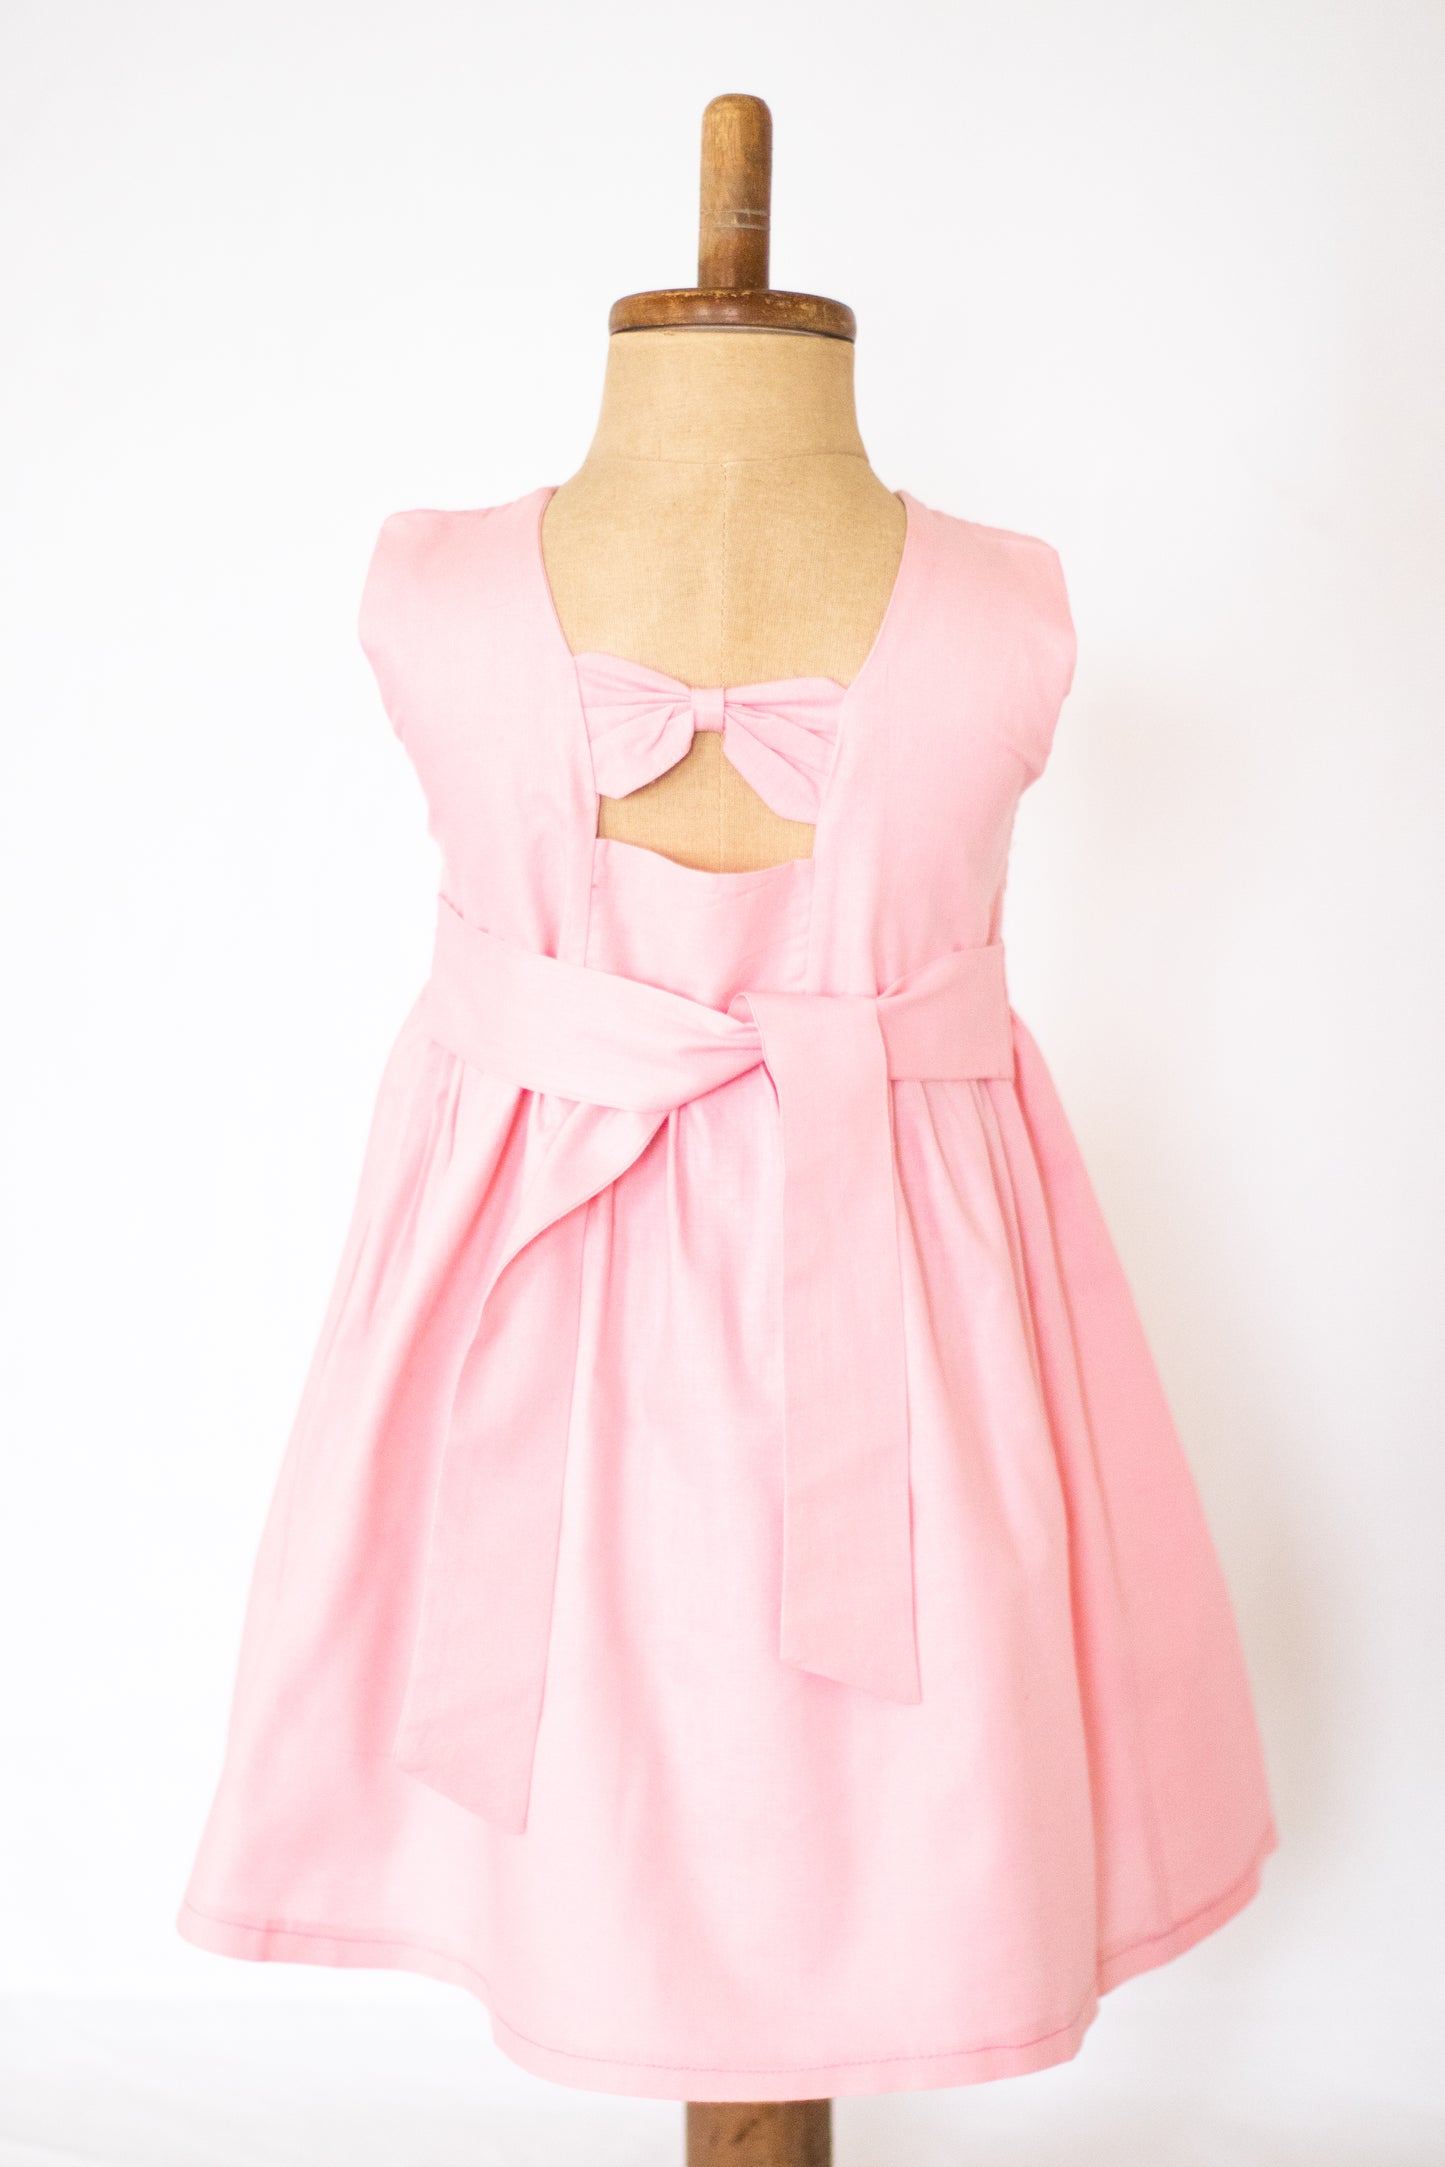 Hand-Smocked Dress, Pink Floral